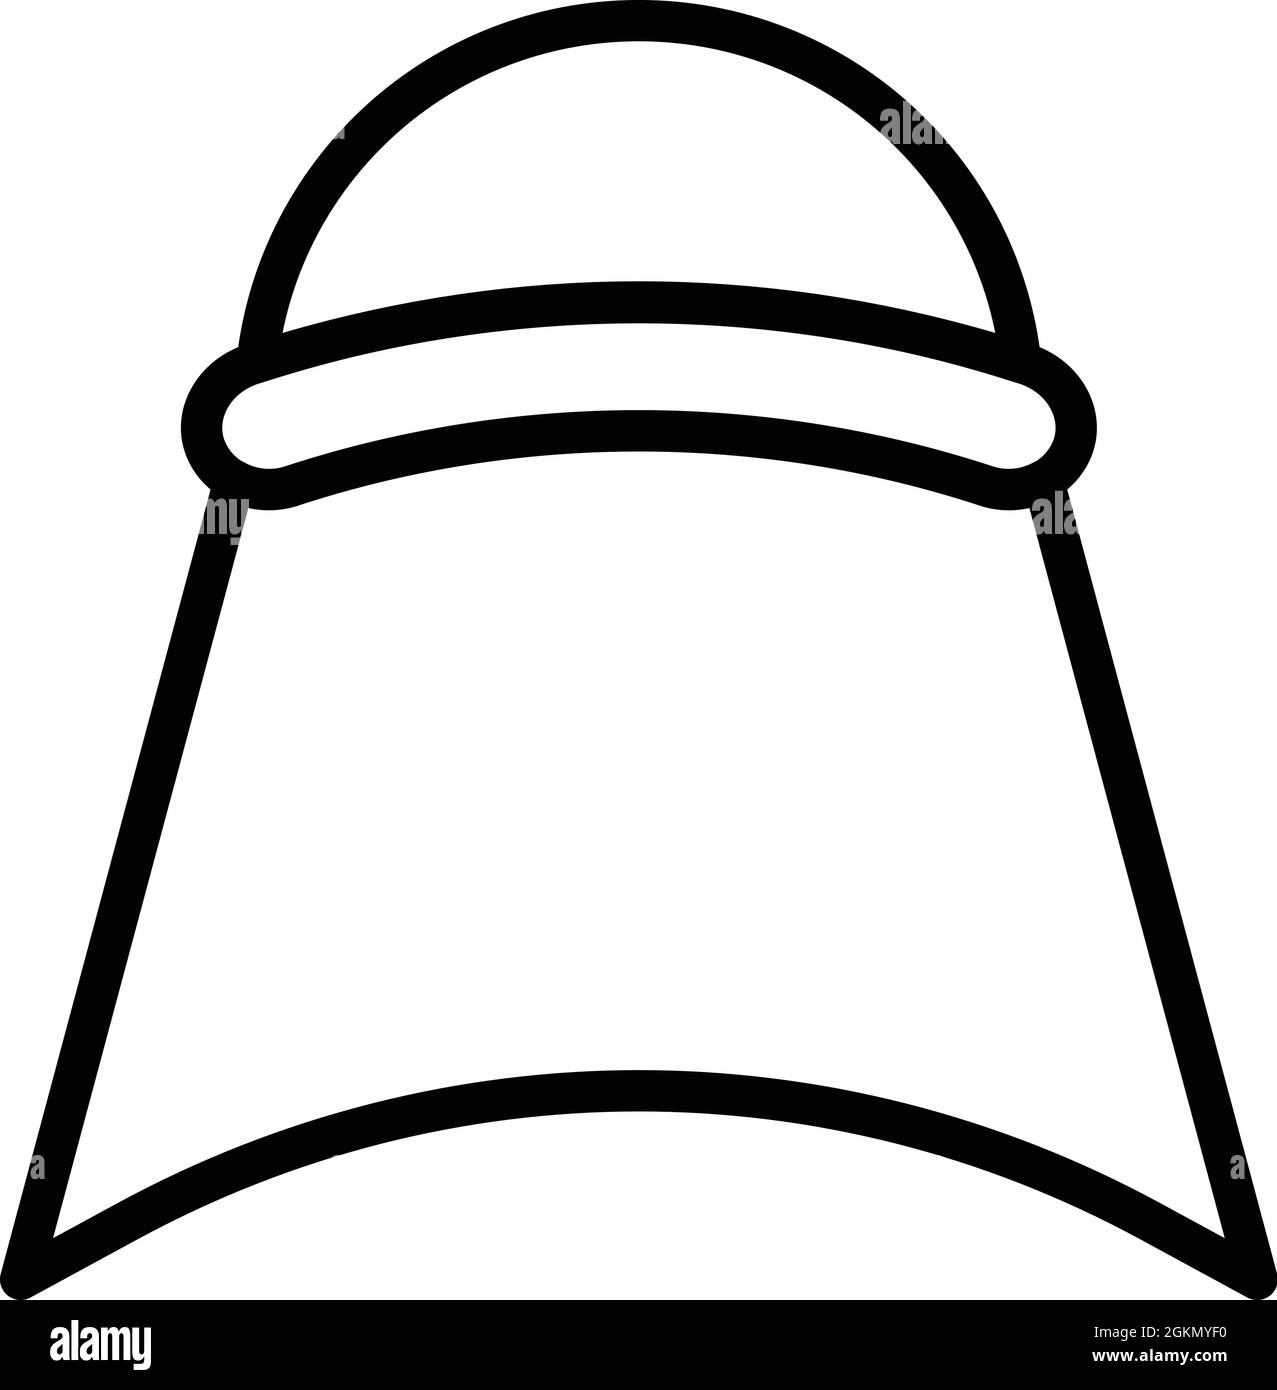 Orientalische Kopfbedeckung Symbol Umriss Vektor. Indische Mütze. King Turban Stock Vektor